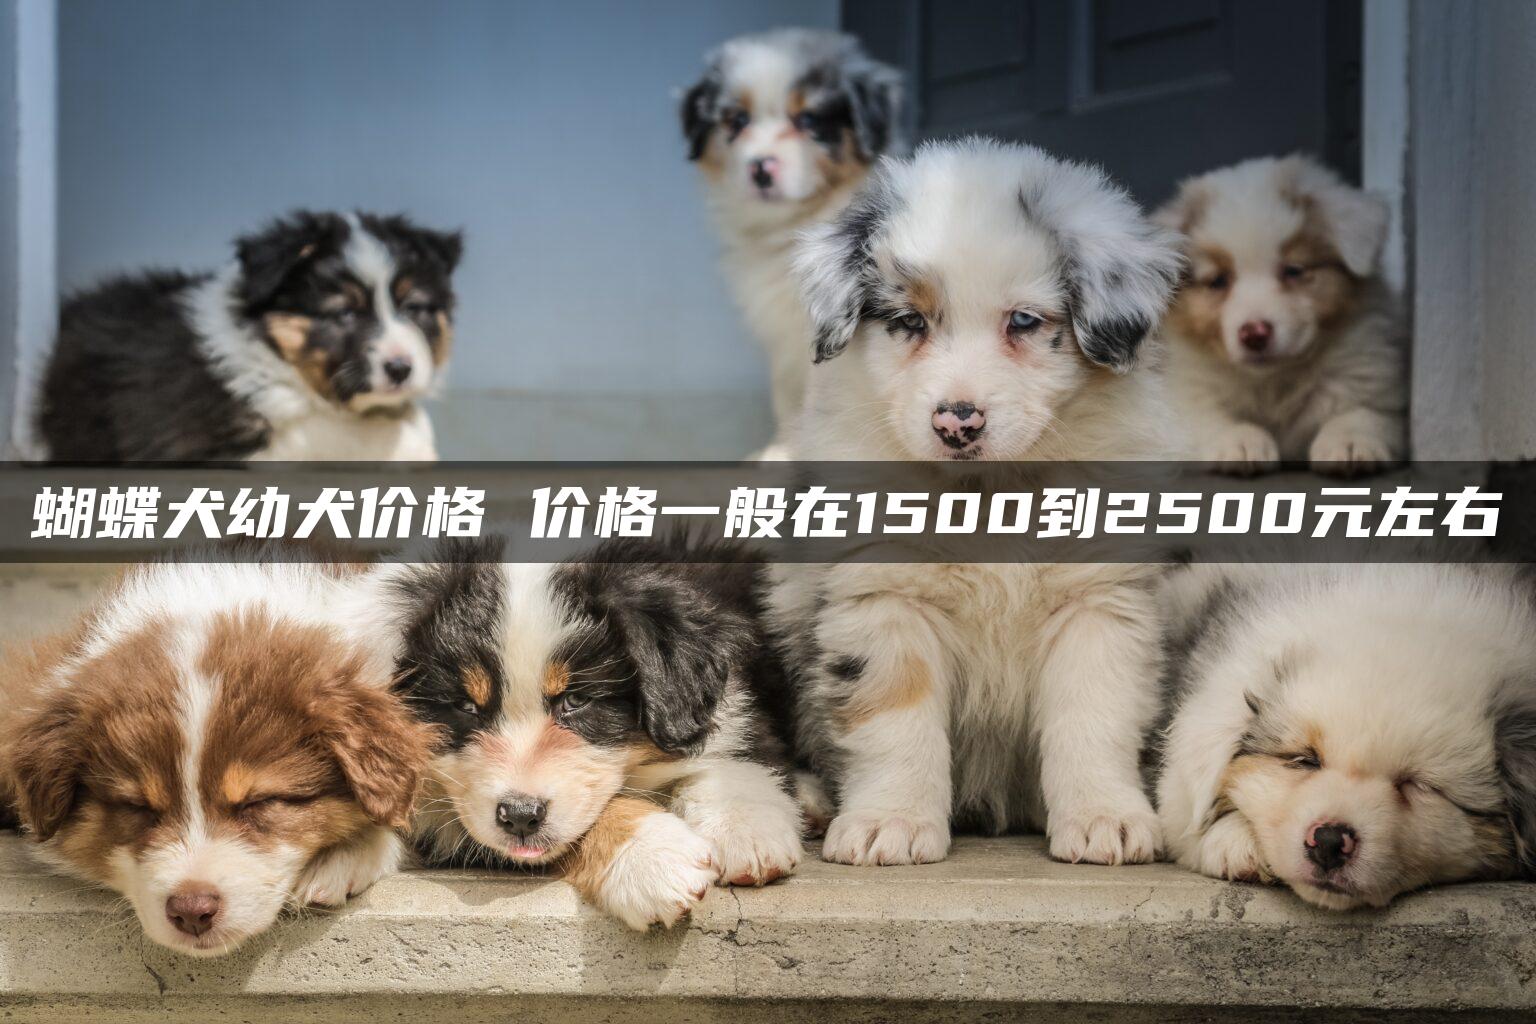 蝴蝶犬幼犬价格 价格一般在1500到2500元左右